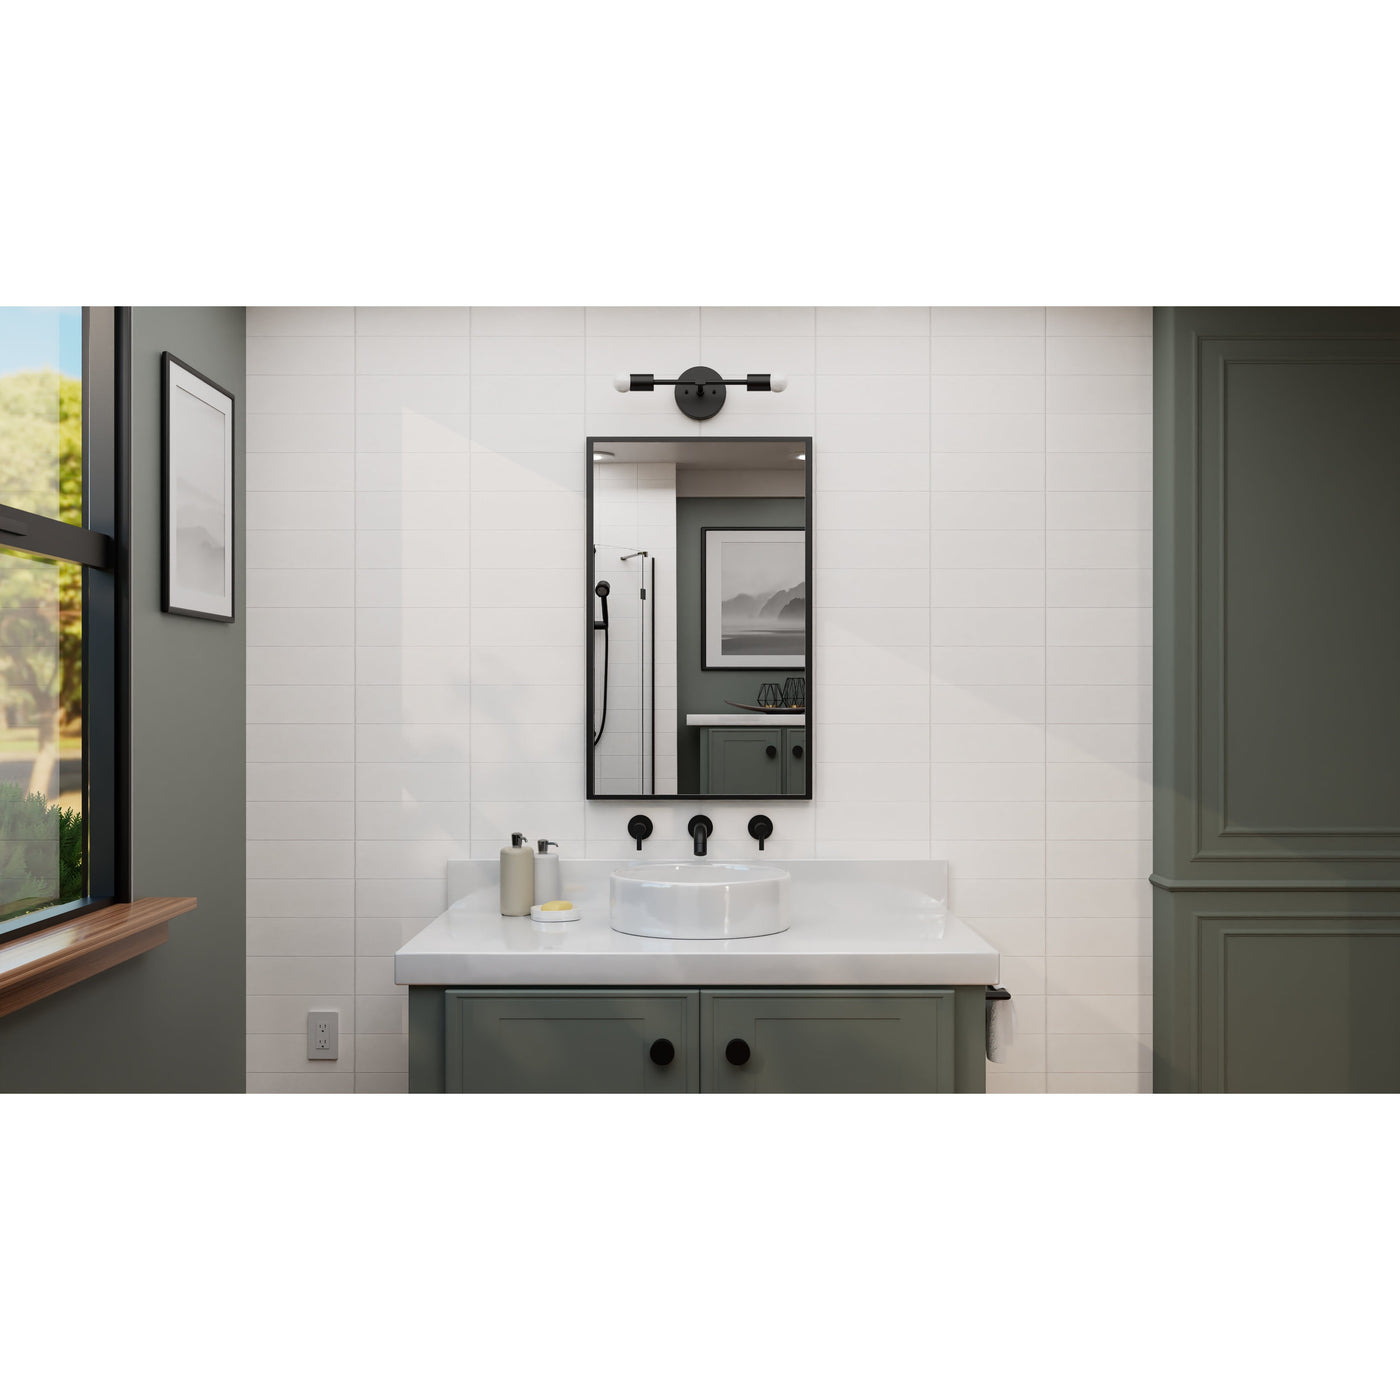 Artesia - Two Light Bathroom Sconce Vanity - Illuminate Vintage